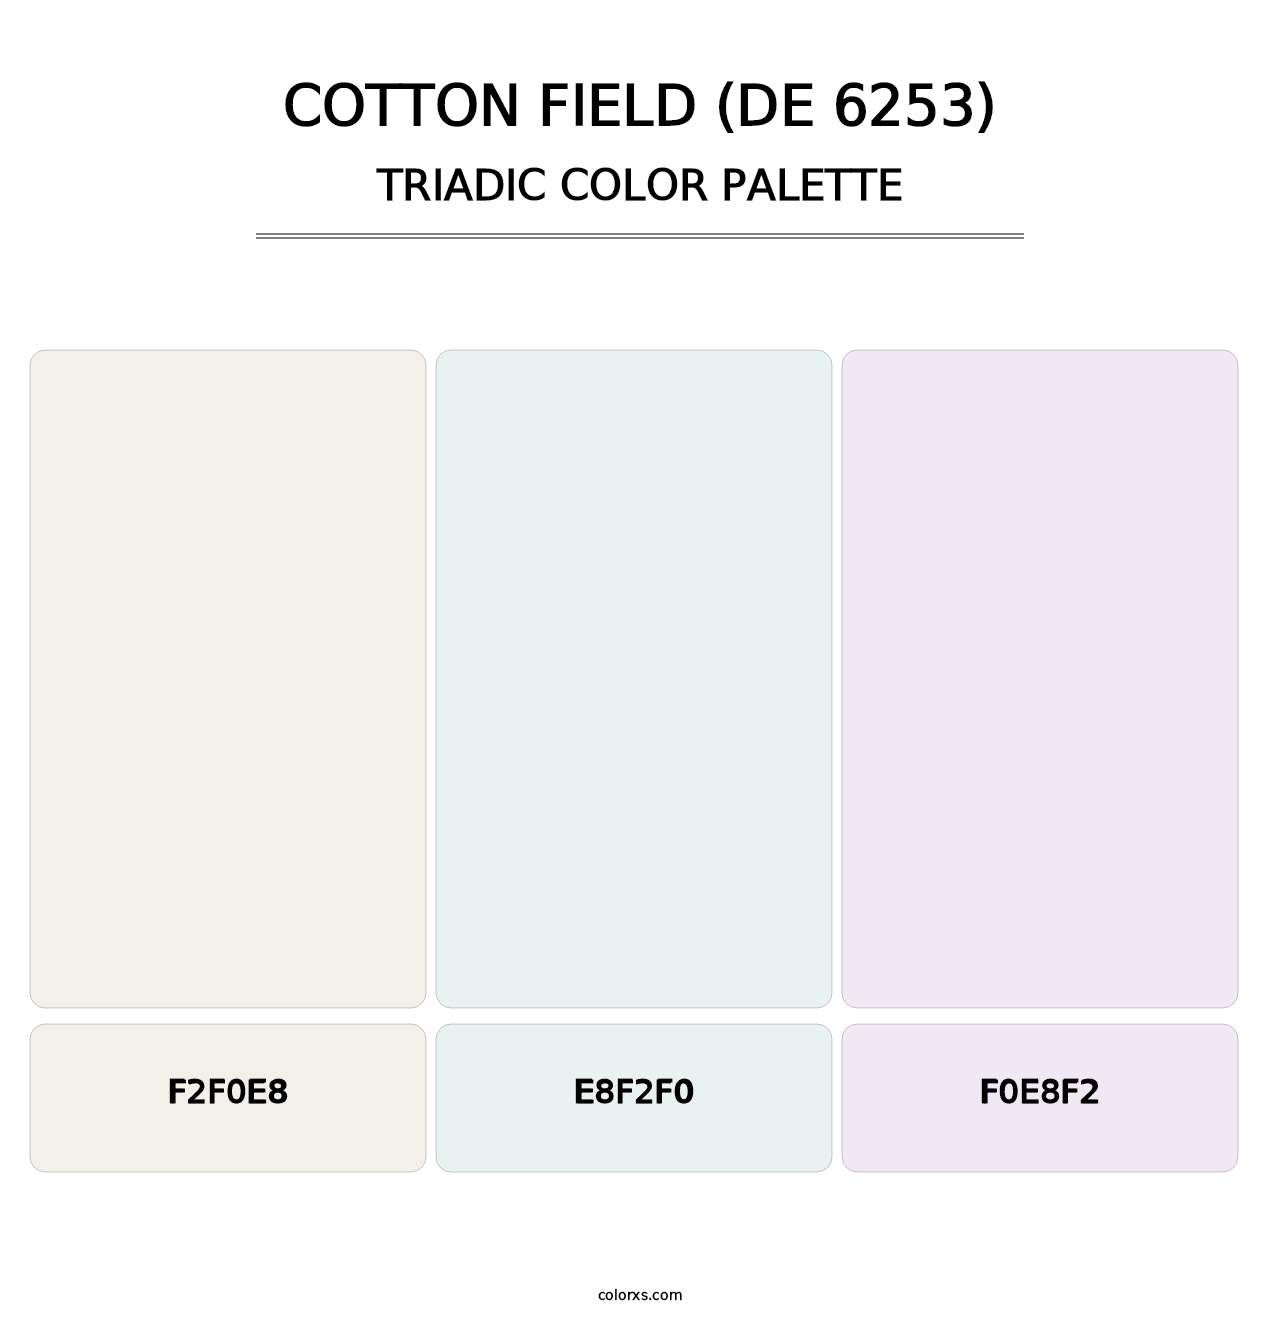 Cotton Field (DE 6253) - Triadic Color Palette